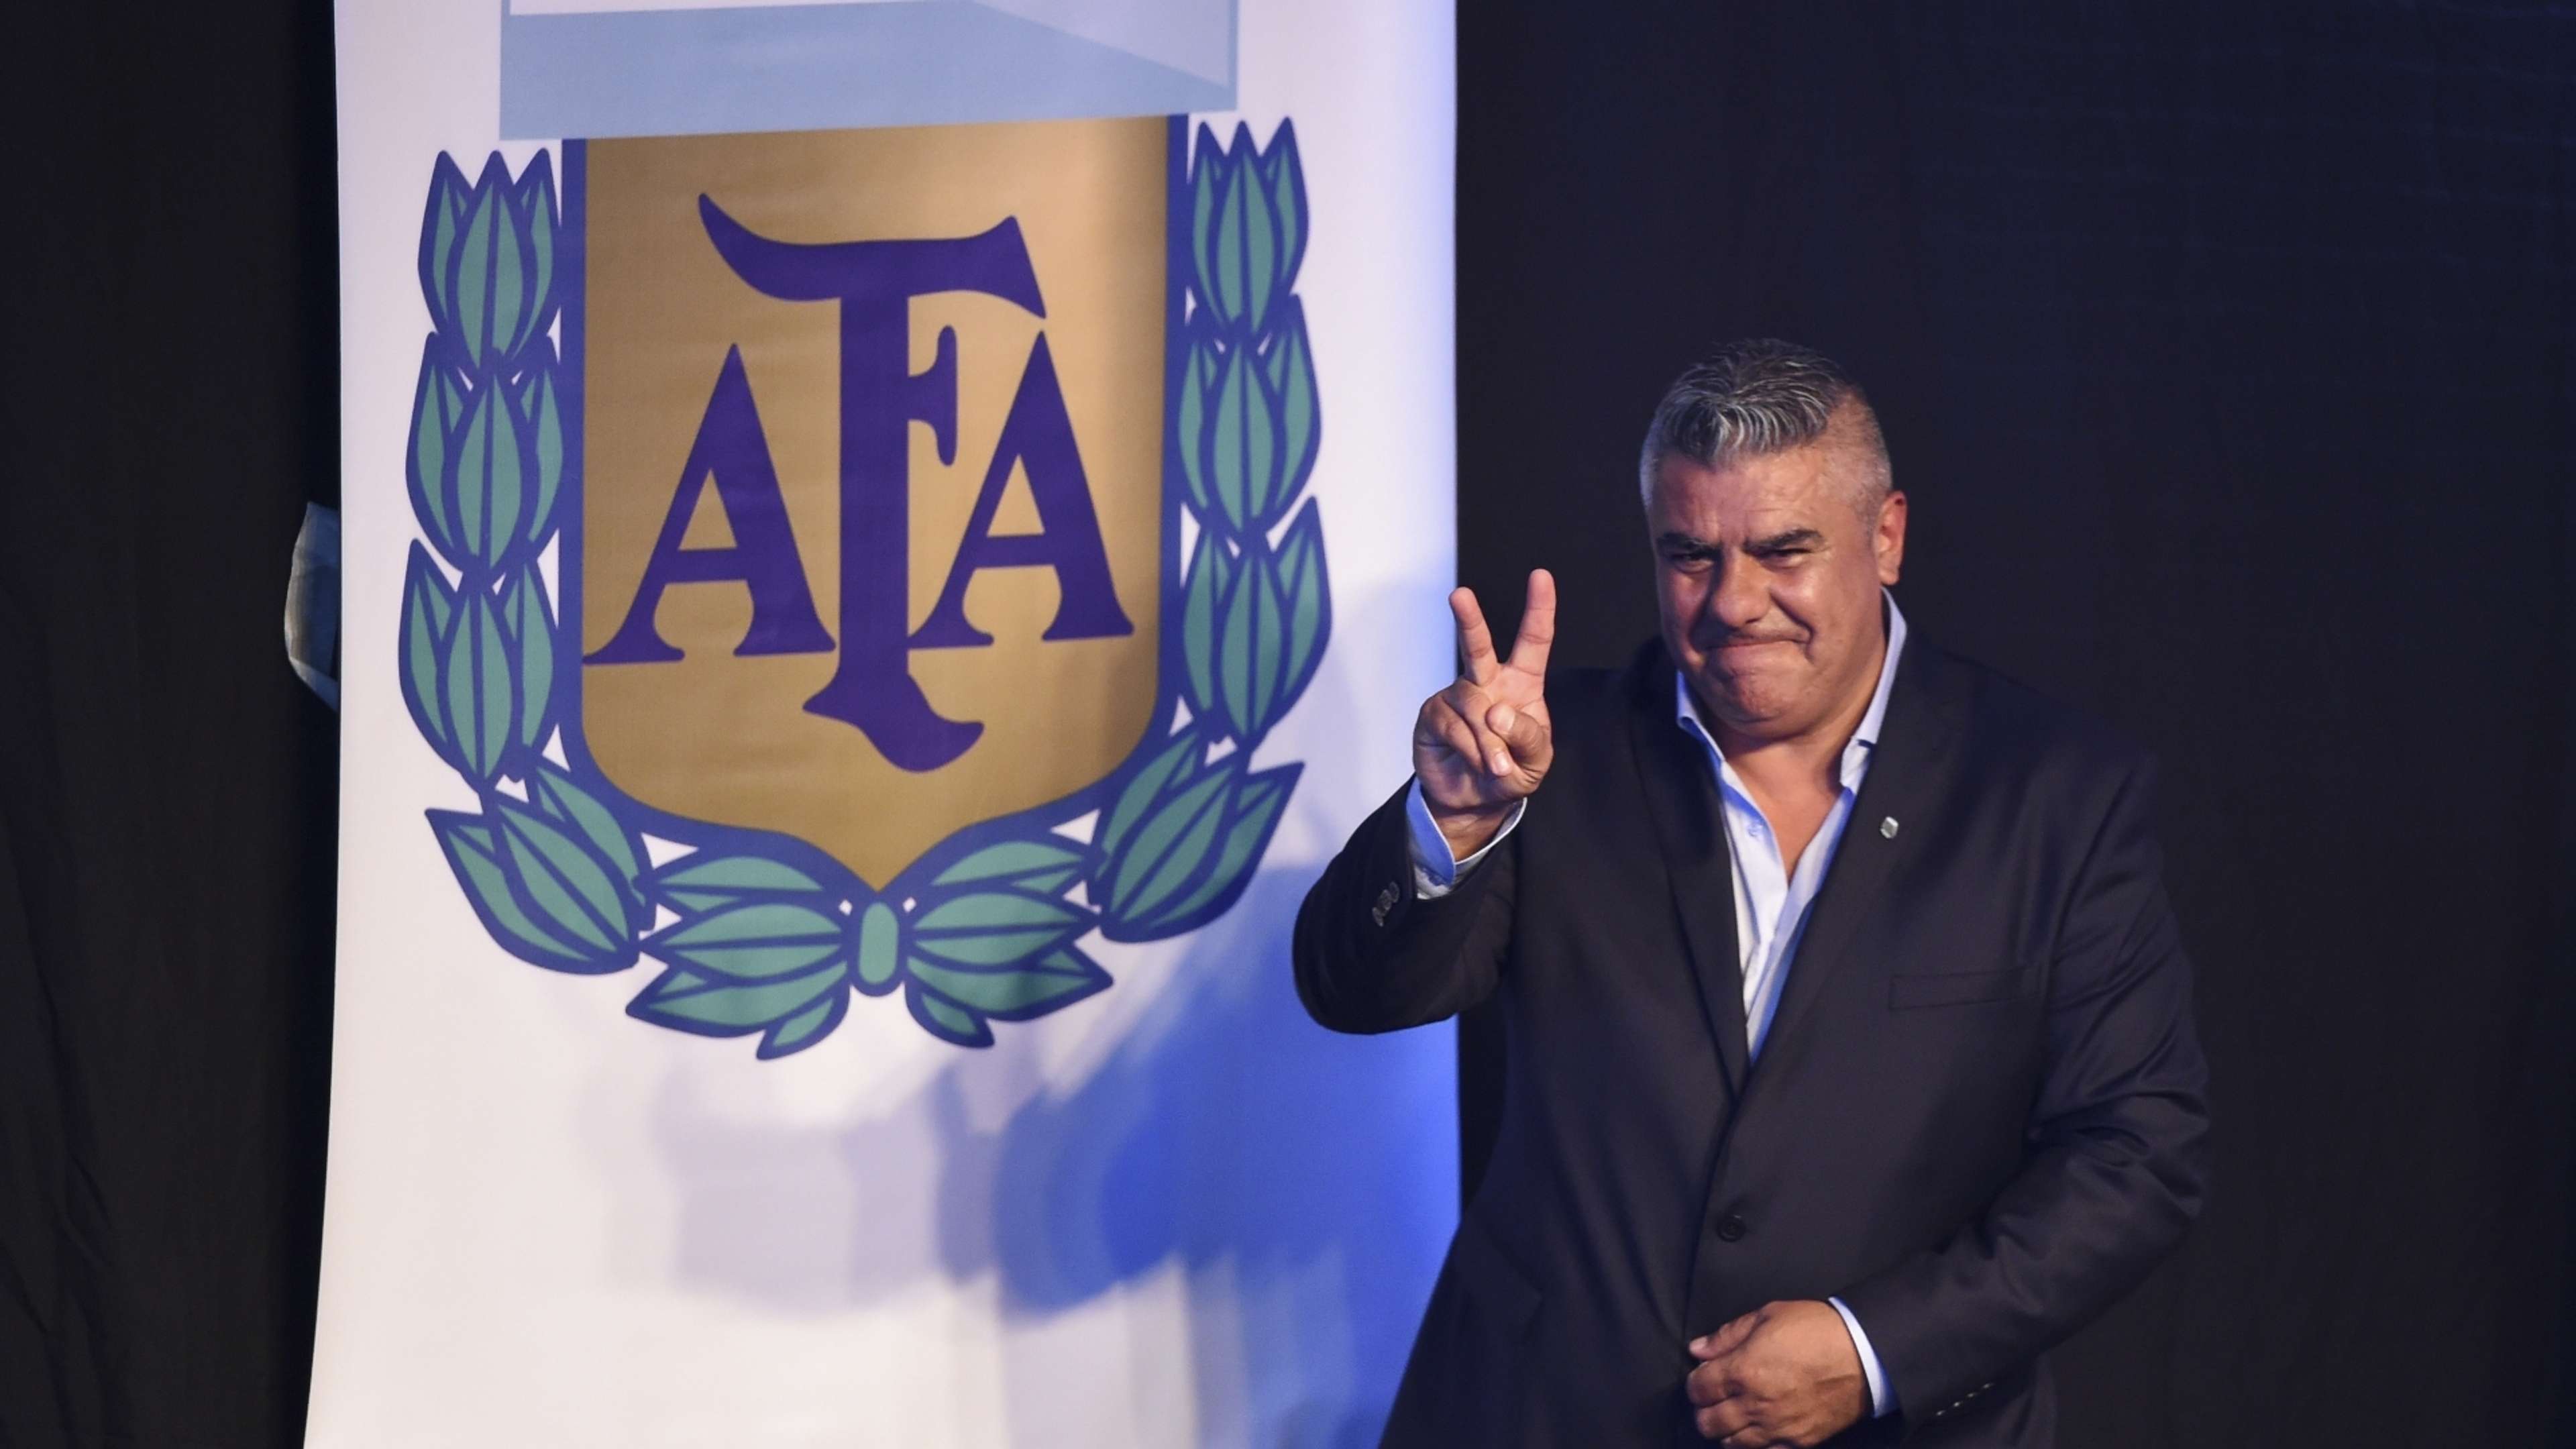 HD Claudio Tapia, AFA president